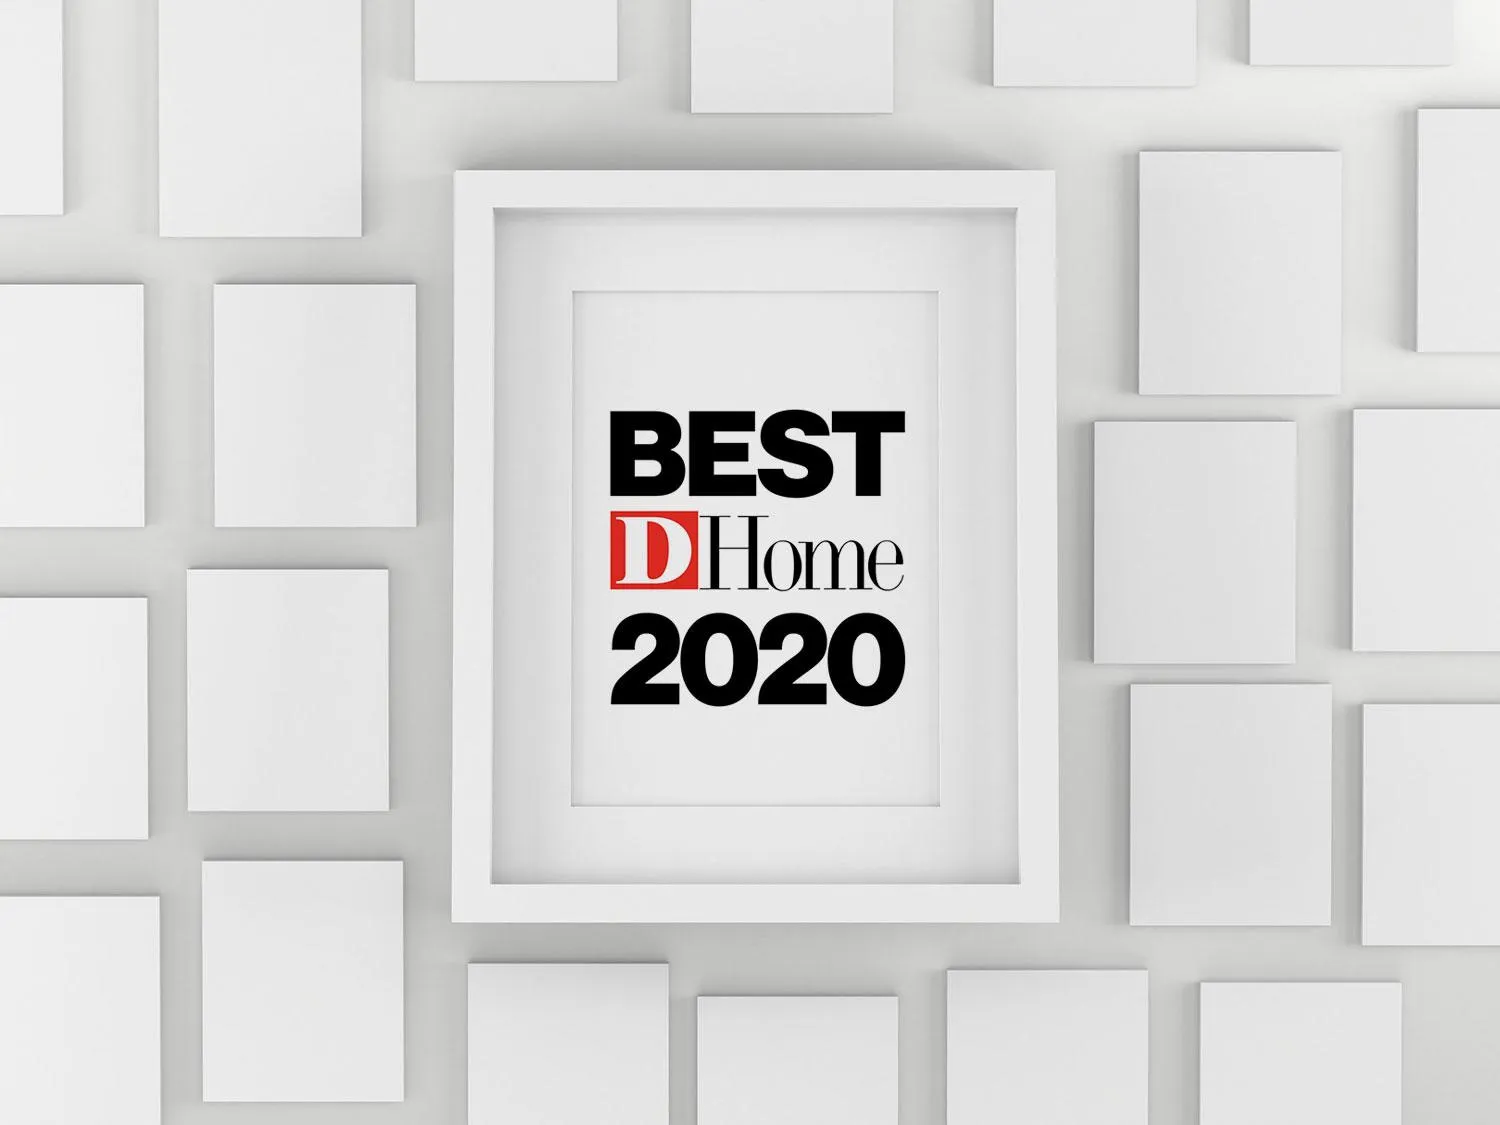 Edinburgh Custom Homes named “Best Home Builder” for 2020 by D Home Magazine. 